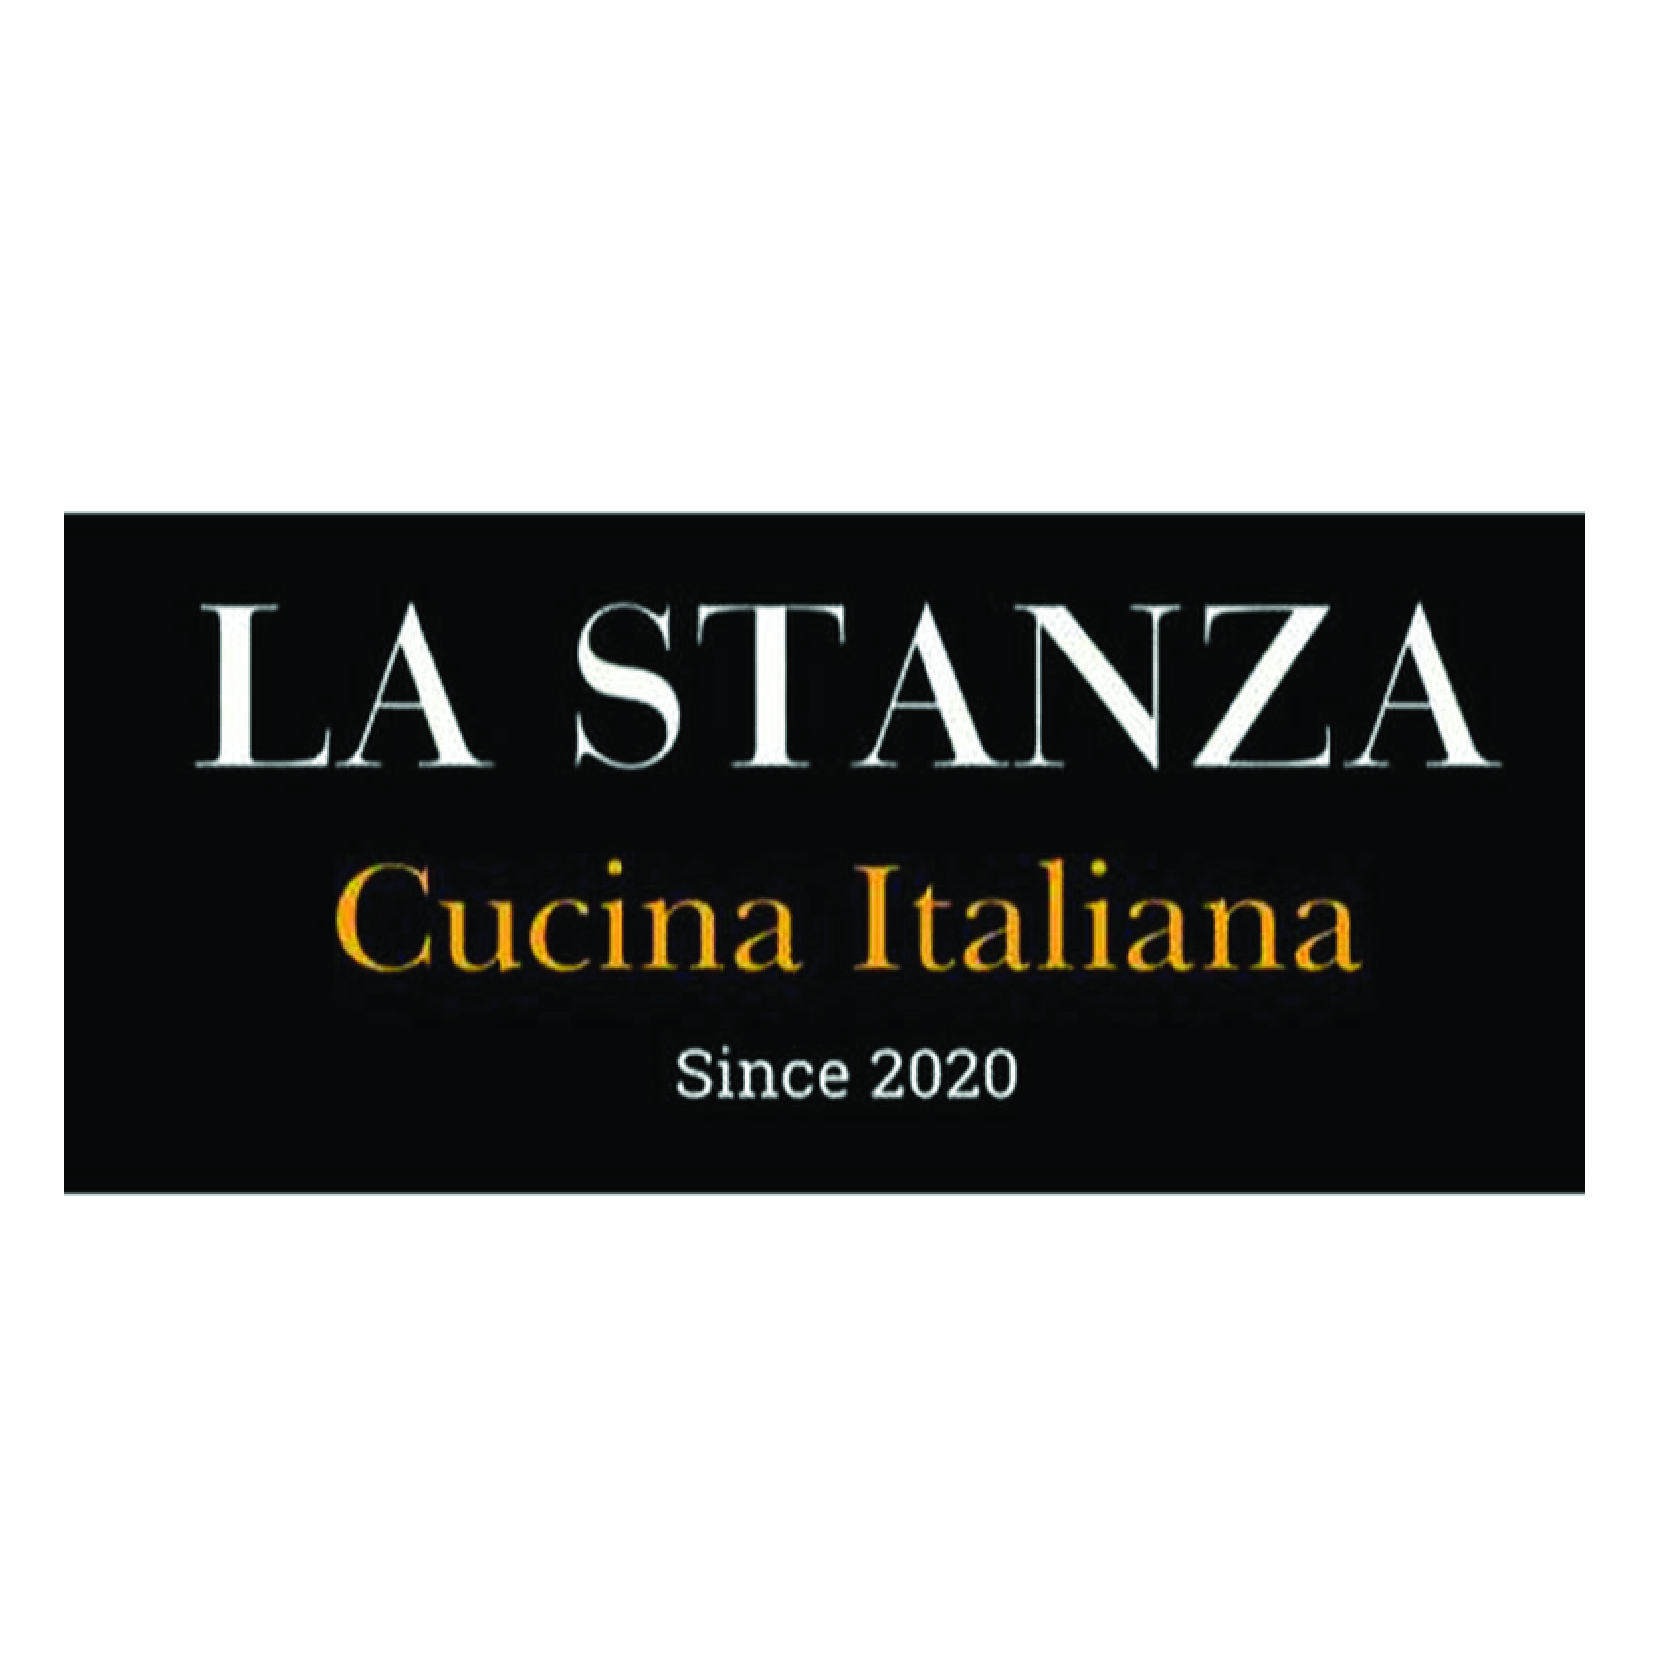 La Stanza Cucina Italiana